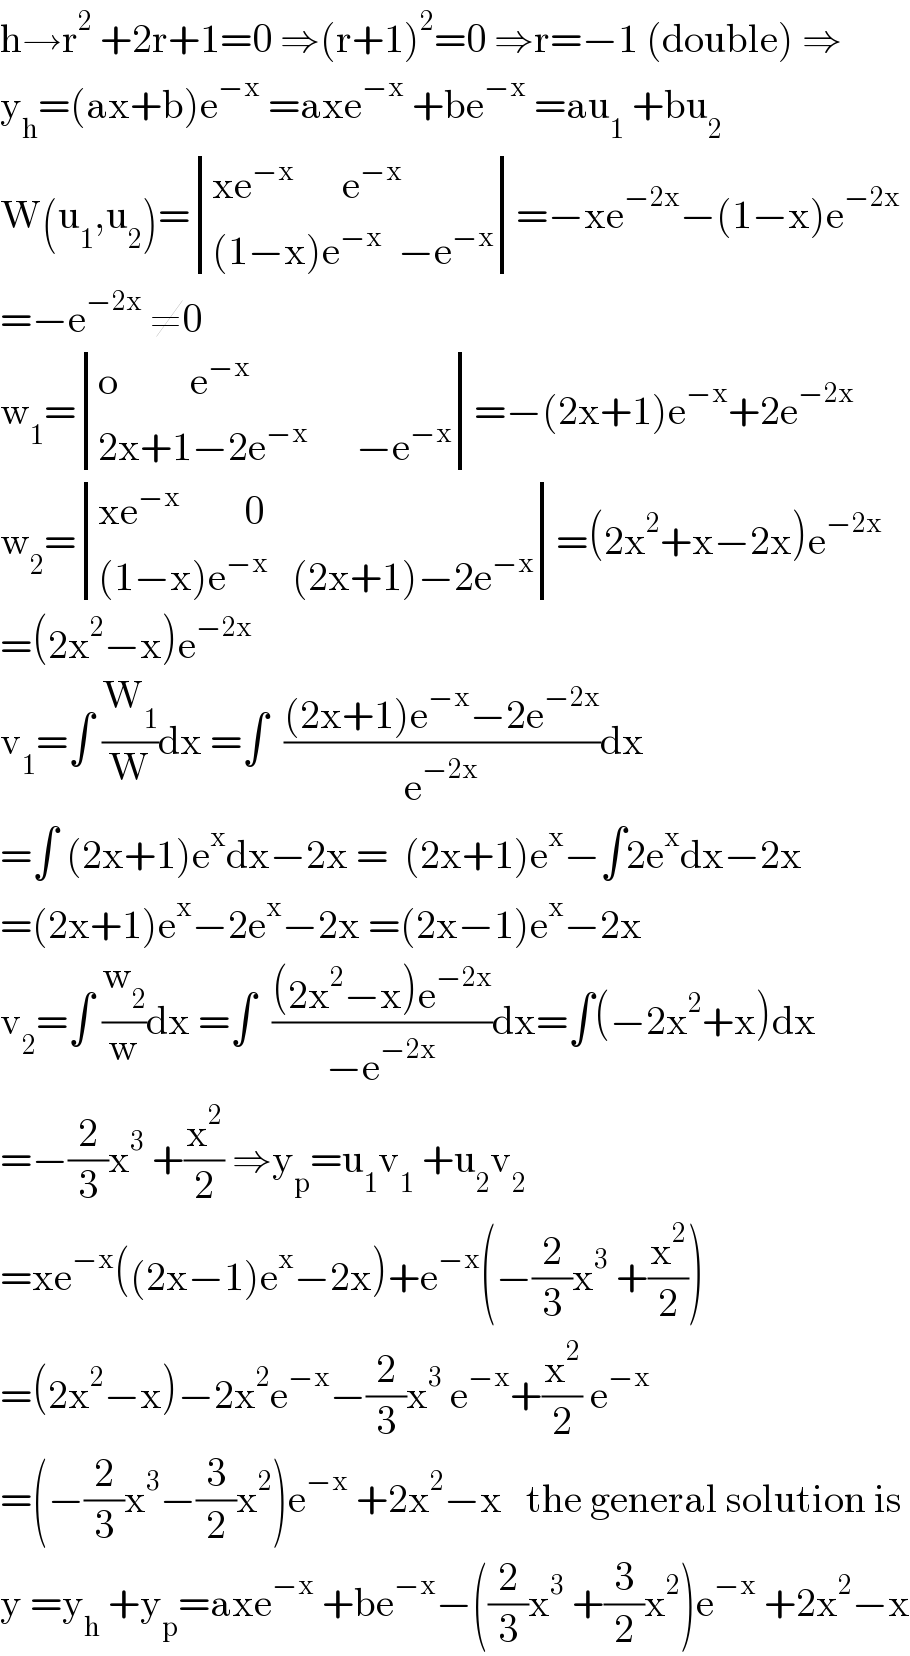 h→r^2  +2r+1=0 ⇒(r+1)^2 =0 ⇒r=−1 (double) ⇒  y_h =(ax+b)e^(−x)  =axe^(−x)  +be^(−x)  =au_1  +bu_2   W(u_1 ,u_2 )= determinant (((xe^(−x)       e^(−x) )),(((1−x)e^(−x)   −e^(−x) )))=−xe^(−2x) −(1−x)e^(−2x)   =−e^(−2x)  ≠0  w_1 = determinant (((o         e^(−x) )),((2x+1−2e^(−x)       −e^(−x) )))=−(2x+1)e^(−x) +2e^(−2x)   w_2 = determinant (((xe^(−x)         0)),(((1−x)e^(−x)    (2x+1)−2e^(−x) )))=(2x^2 +x−2x)e^(−2x)   =(2x^2 −x)e^(−2x)   v_1 =∫ (W_1 /W)dx =∫  (((2x+1)e^(−x) −2e^(−2x) )/e^(−2x) )dx  =∫ (2x+1)e^x dx−2x =  (2x+1)e^x −∫2e^x dx−2x  =(2x+1)e^x −2e^x −2x =(2x−1)e^x −2x  v_2 =∫ (w_2 /w)dx =∫  (((2x^2 −x)e^(−2x) )/(−e^(−2x) ))dx=∫(−2x^2 +x)dx  =−(2/3)x^3  +(x^2 /2) ⇒y_p =u_1 v_1  +u_2 v_2   =xe^(−x) ((2x−1)e^x −2x)+e^(−x) (−(2/3)x^3  +(x^2 /2))  =(2x^2 −x)−2x^2 e^(−x) −(2/3)x^3  e^(−x) +(x^2 /2) e^(−x)   =(−(2/3)x^3 −(3/2)x^2 )e^(−x)  +2x^2 −x   the general solution is  y =y_h  +y_p =axe^(−x)  +be^(−x) −((2/3)x^3  +(3/2)x^2 )e^(−x)  +2x^2 −x  